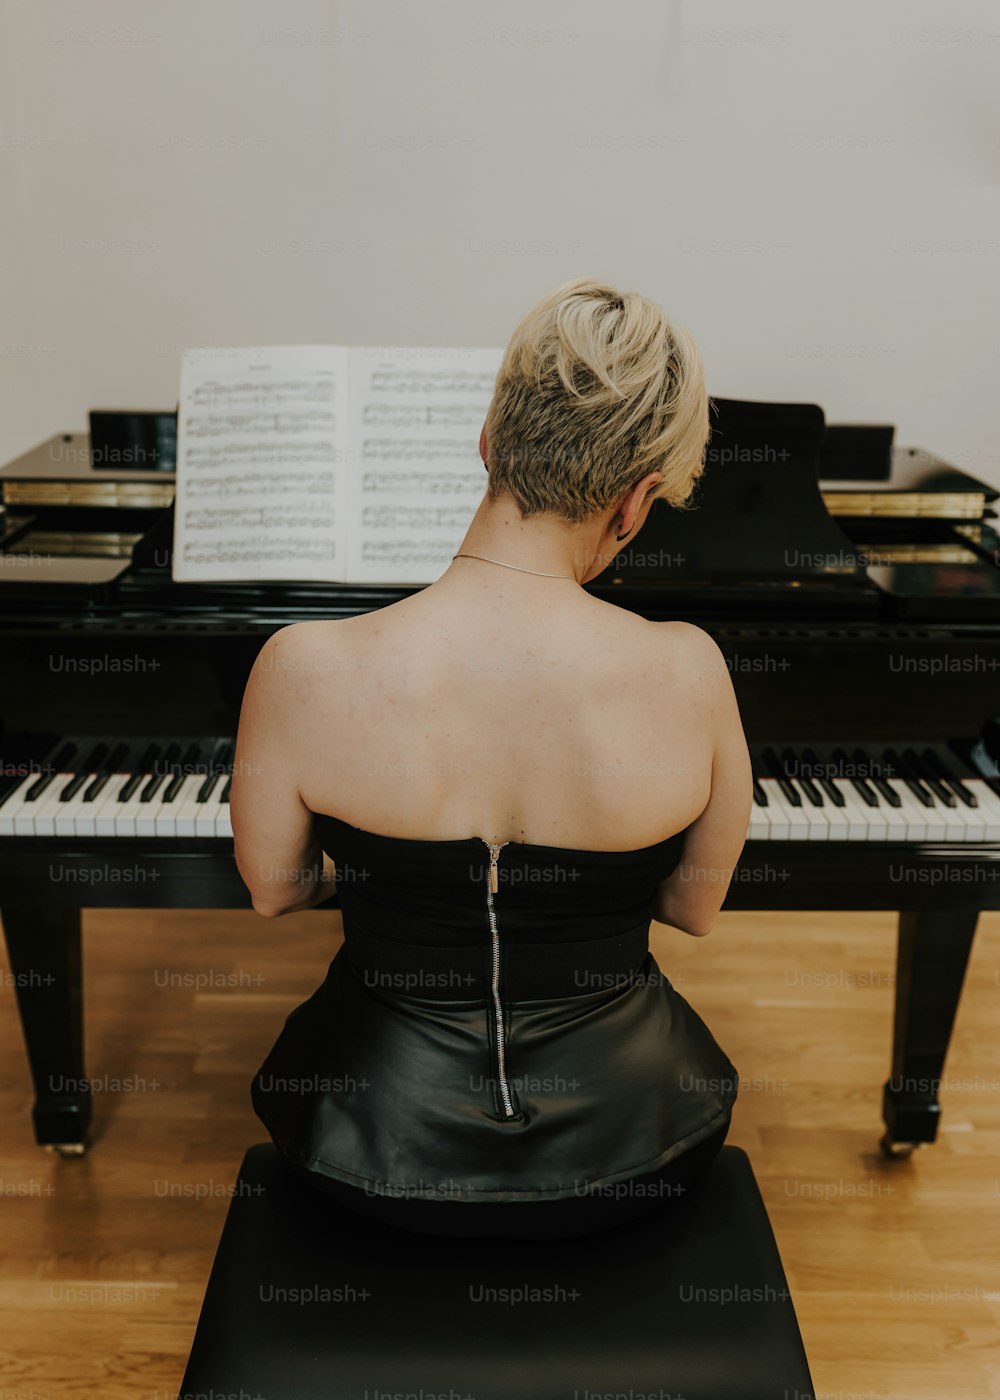 검은 드레스를 입��은 여자가 피아노 앞에 앉아 있다